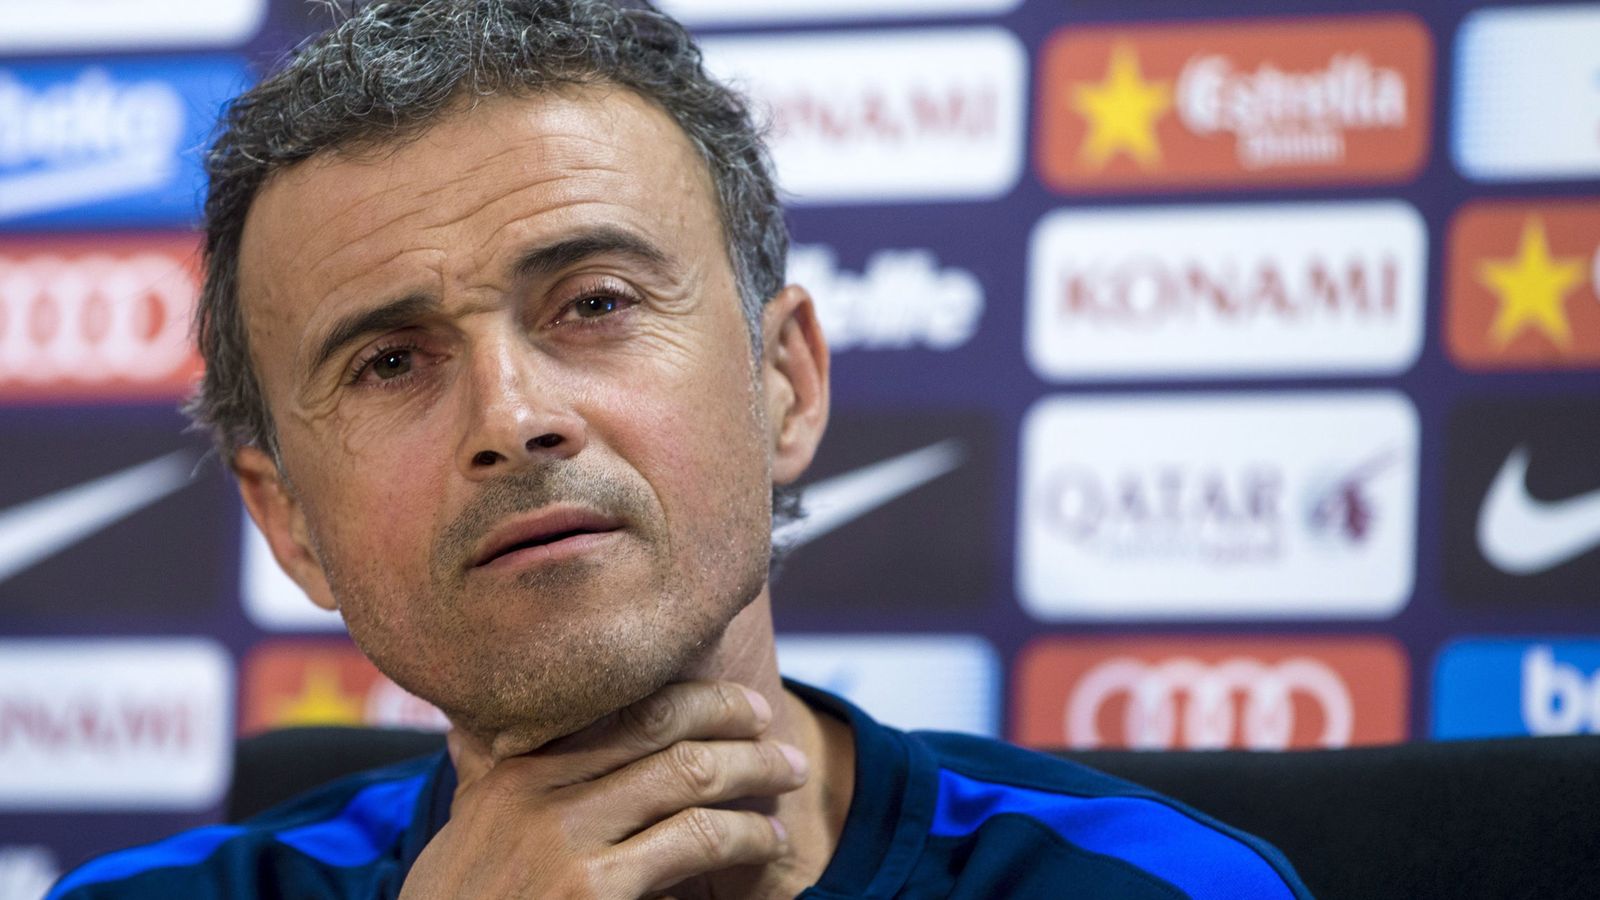 Foto: Luis Enrique durante una conferencia de prensa en su etapa como entrenador del Barcelona. (Efe)